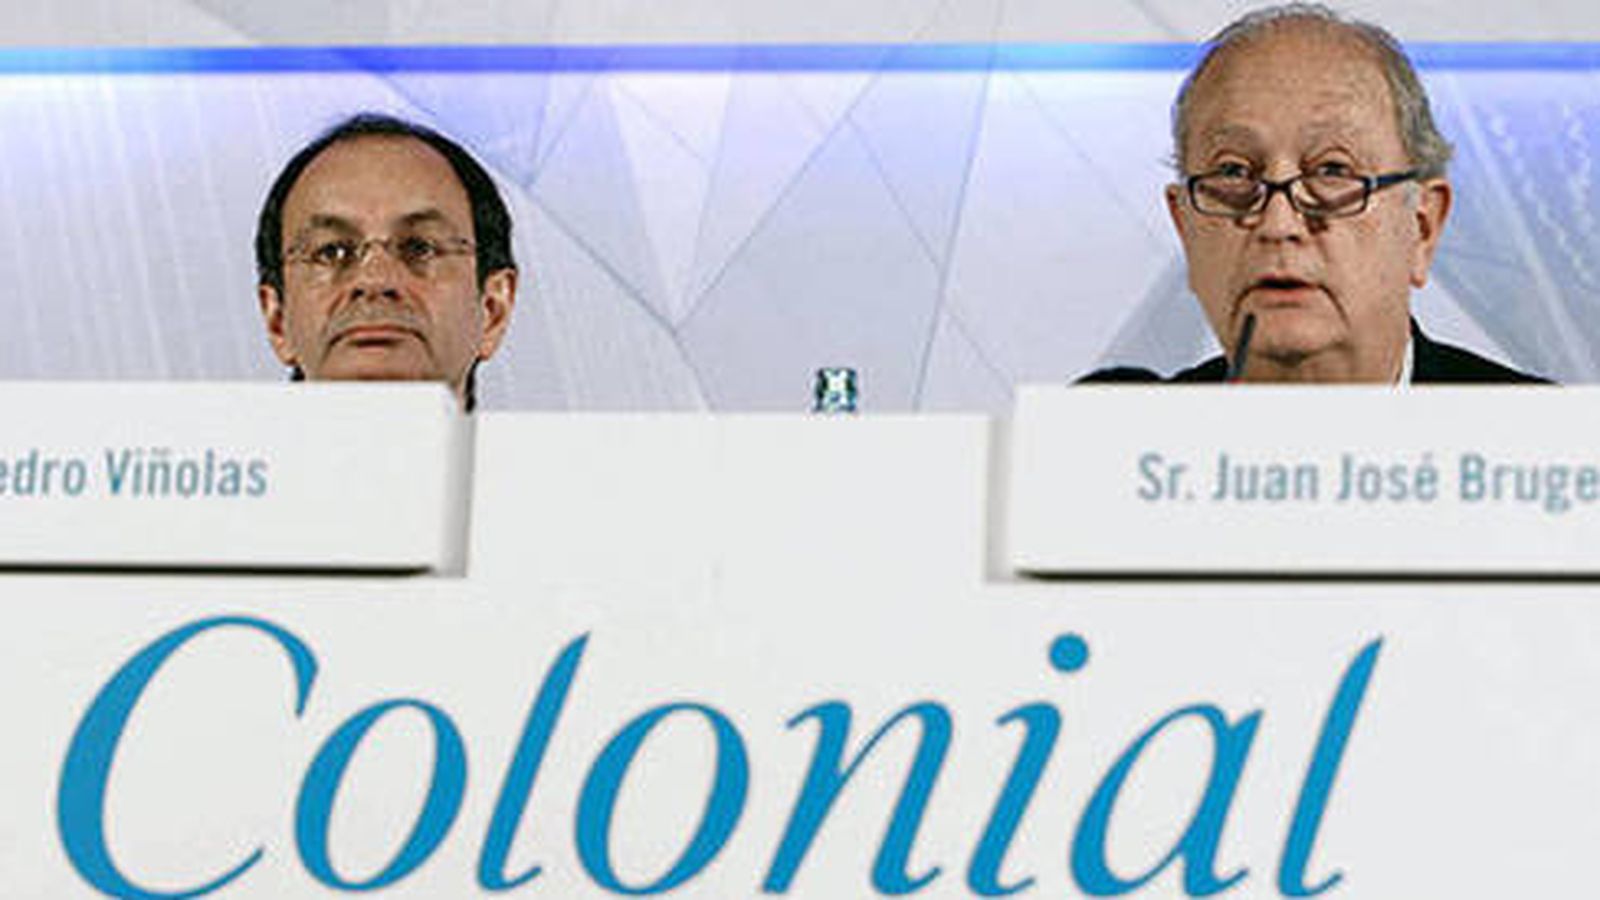 Foto: Pere Viñolas, CEO de Colonial, y Juan José Bruguera, presidente